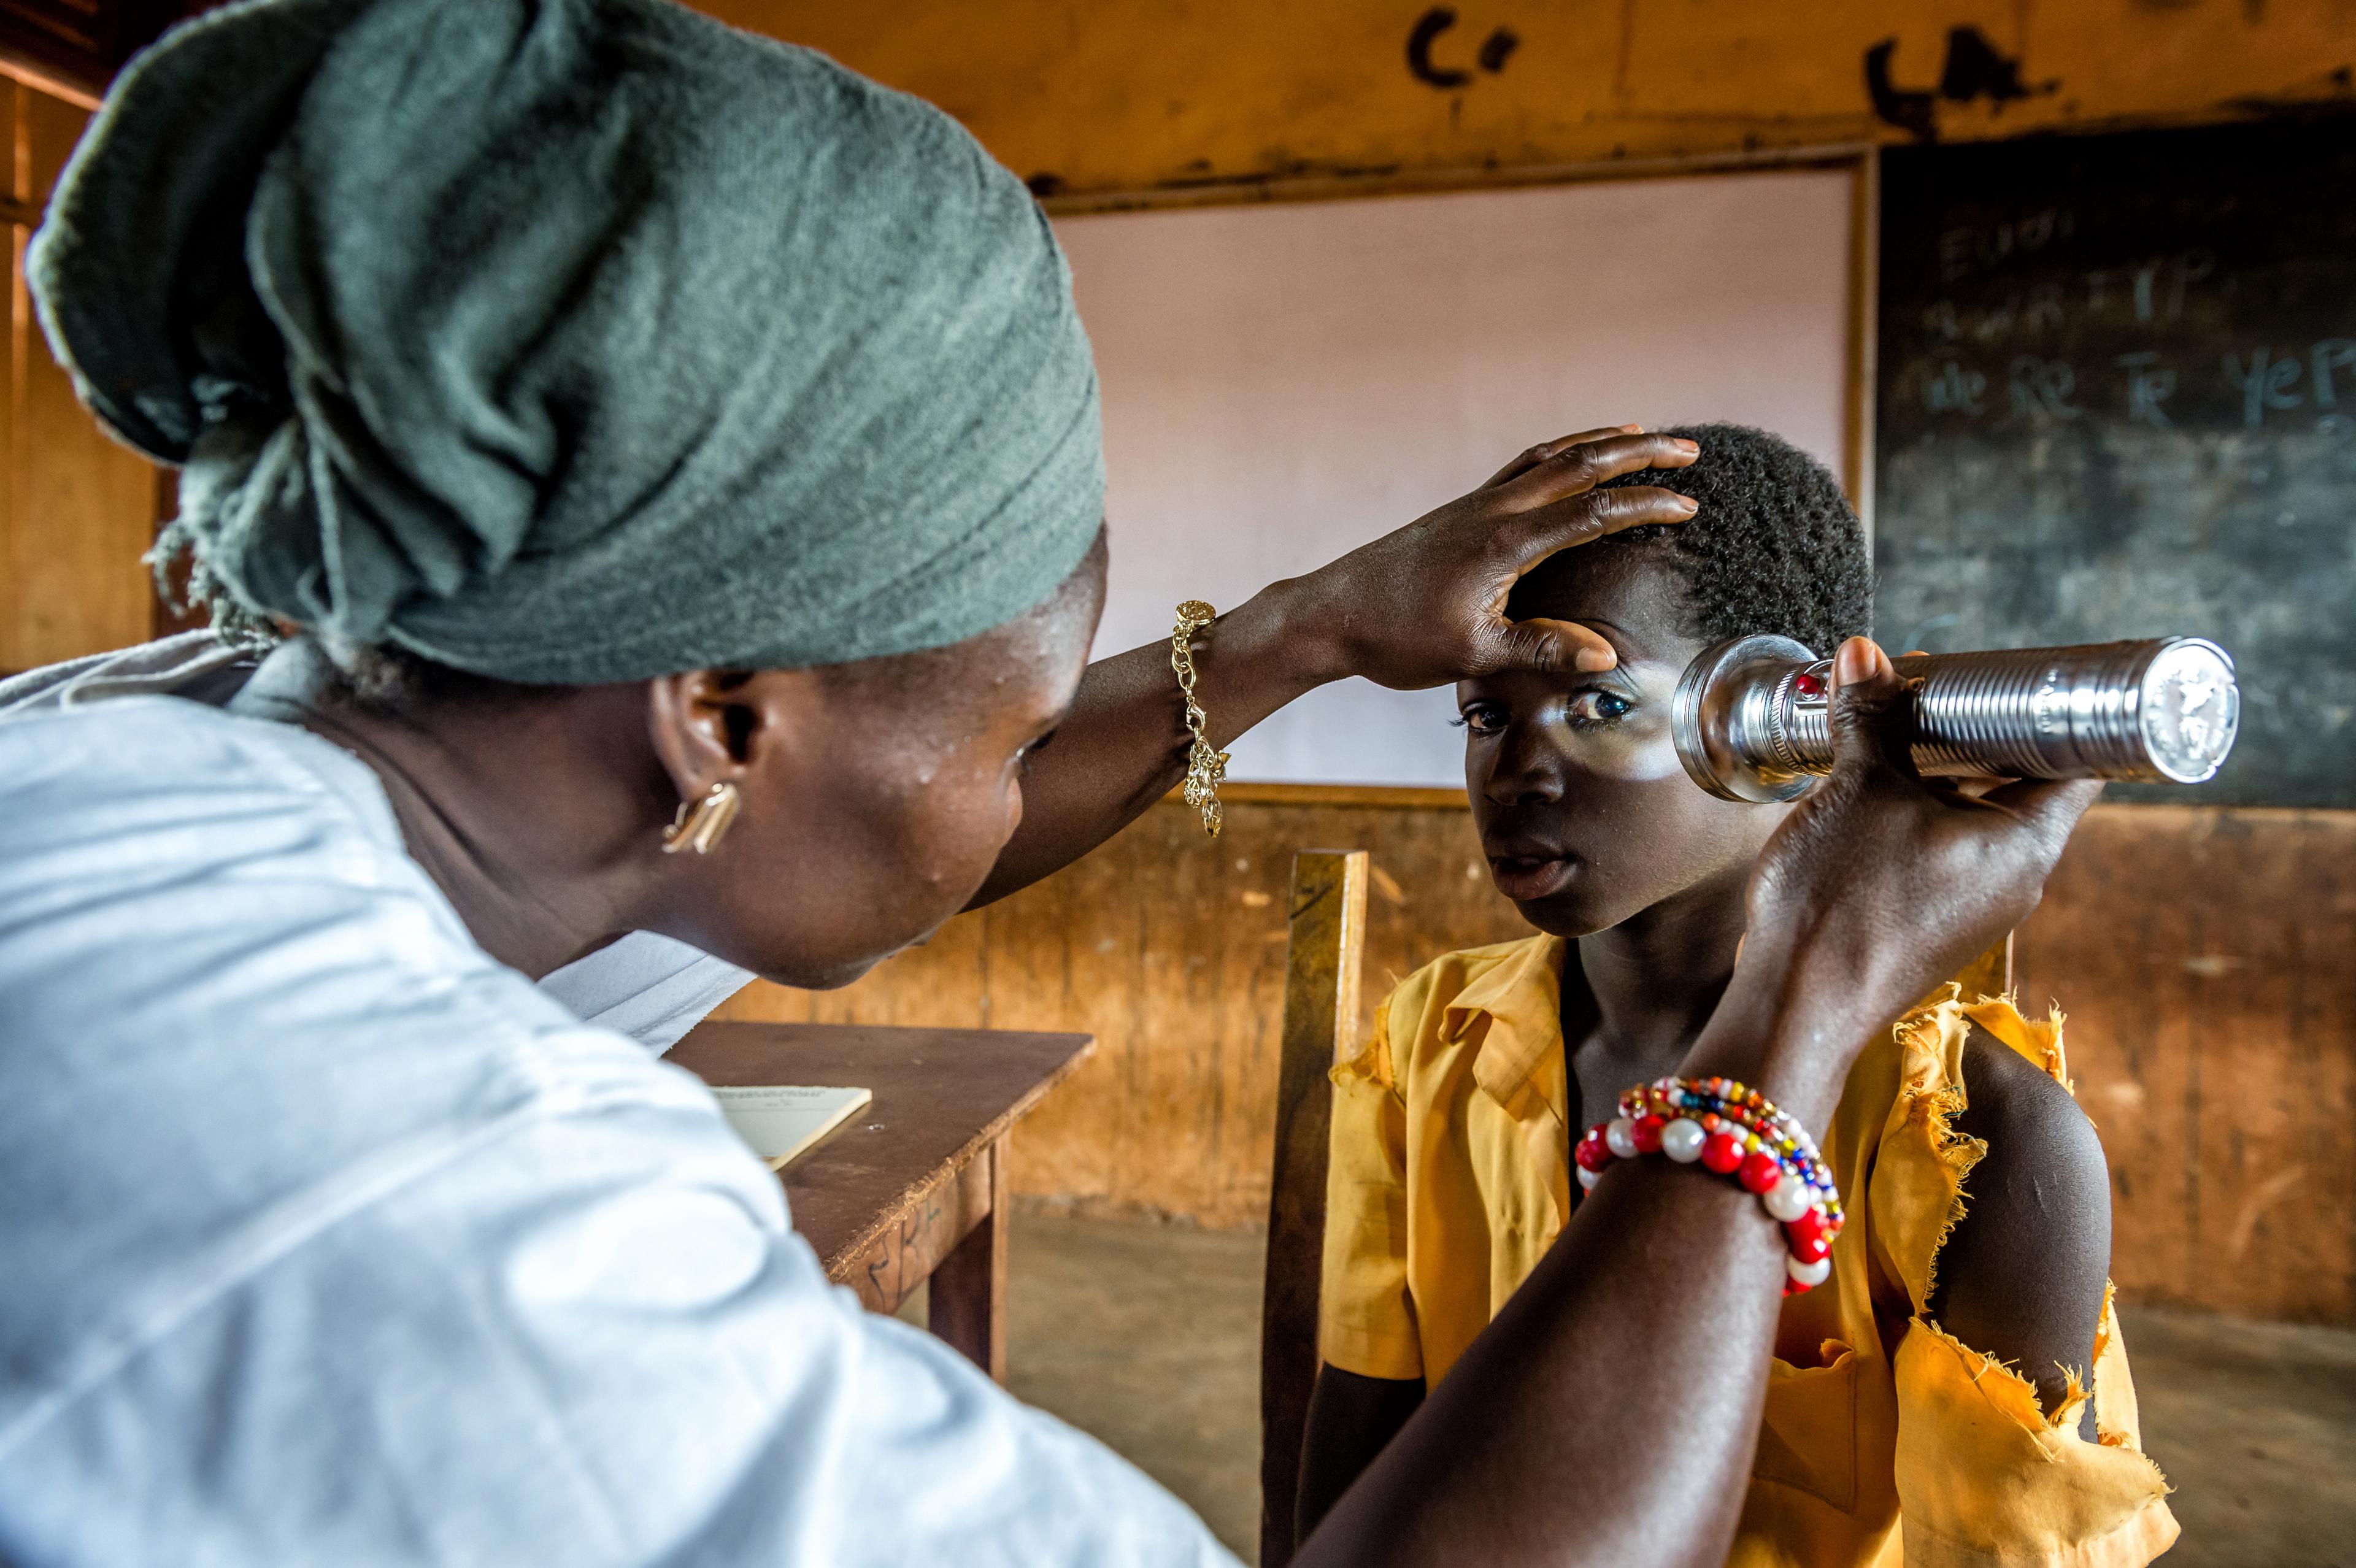 Fillette passant un examen oculaire dans une école près de Tamale. Un médecin regarde son œil gauche avec une lampe de poche.